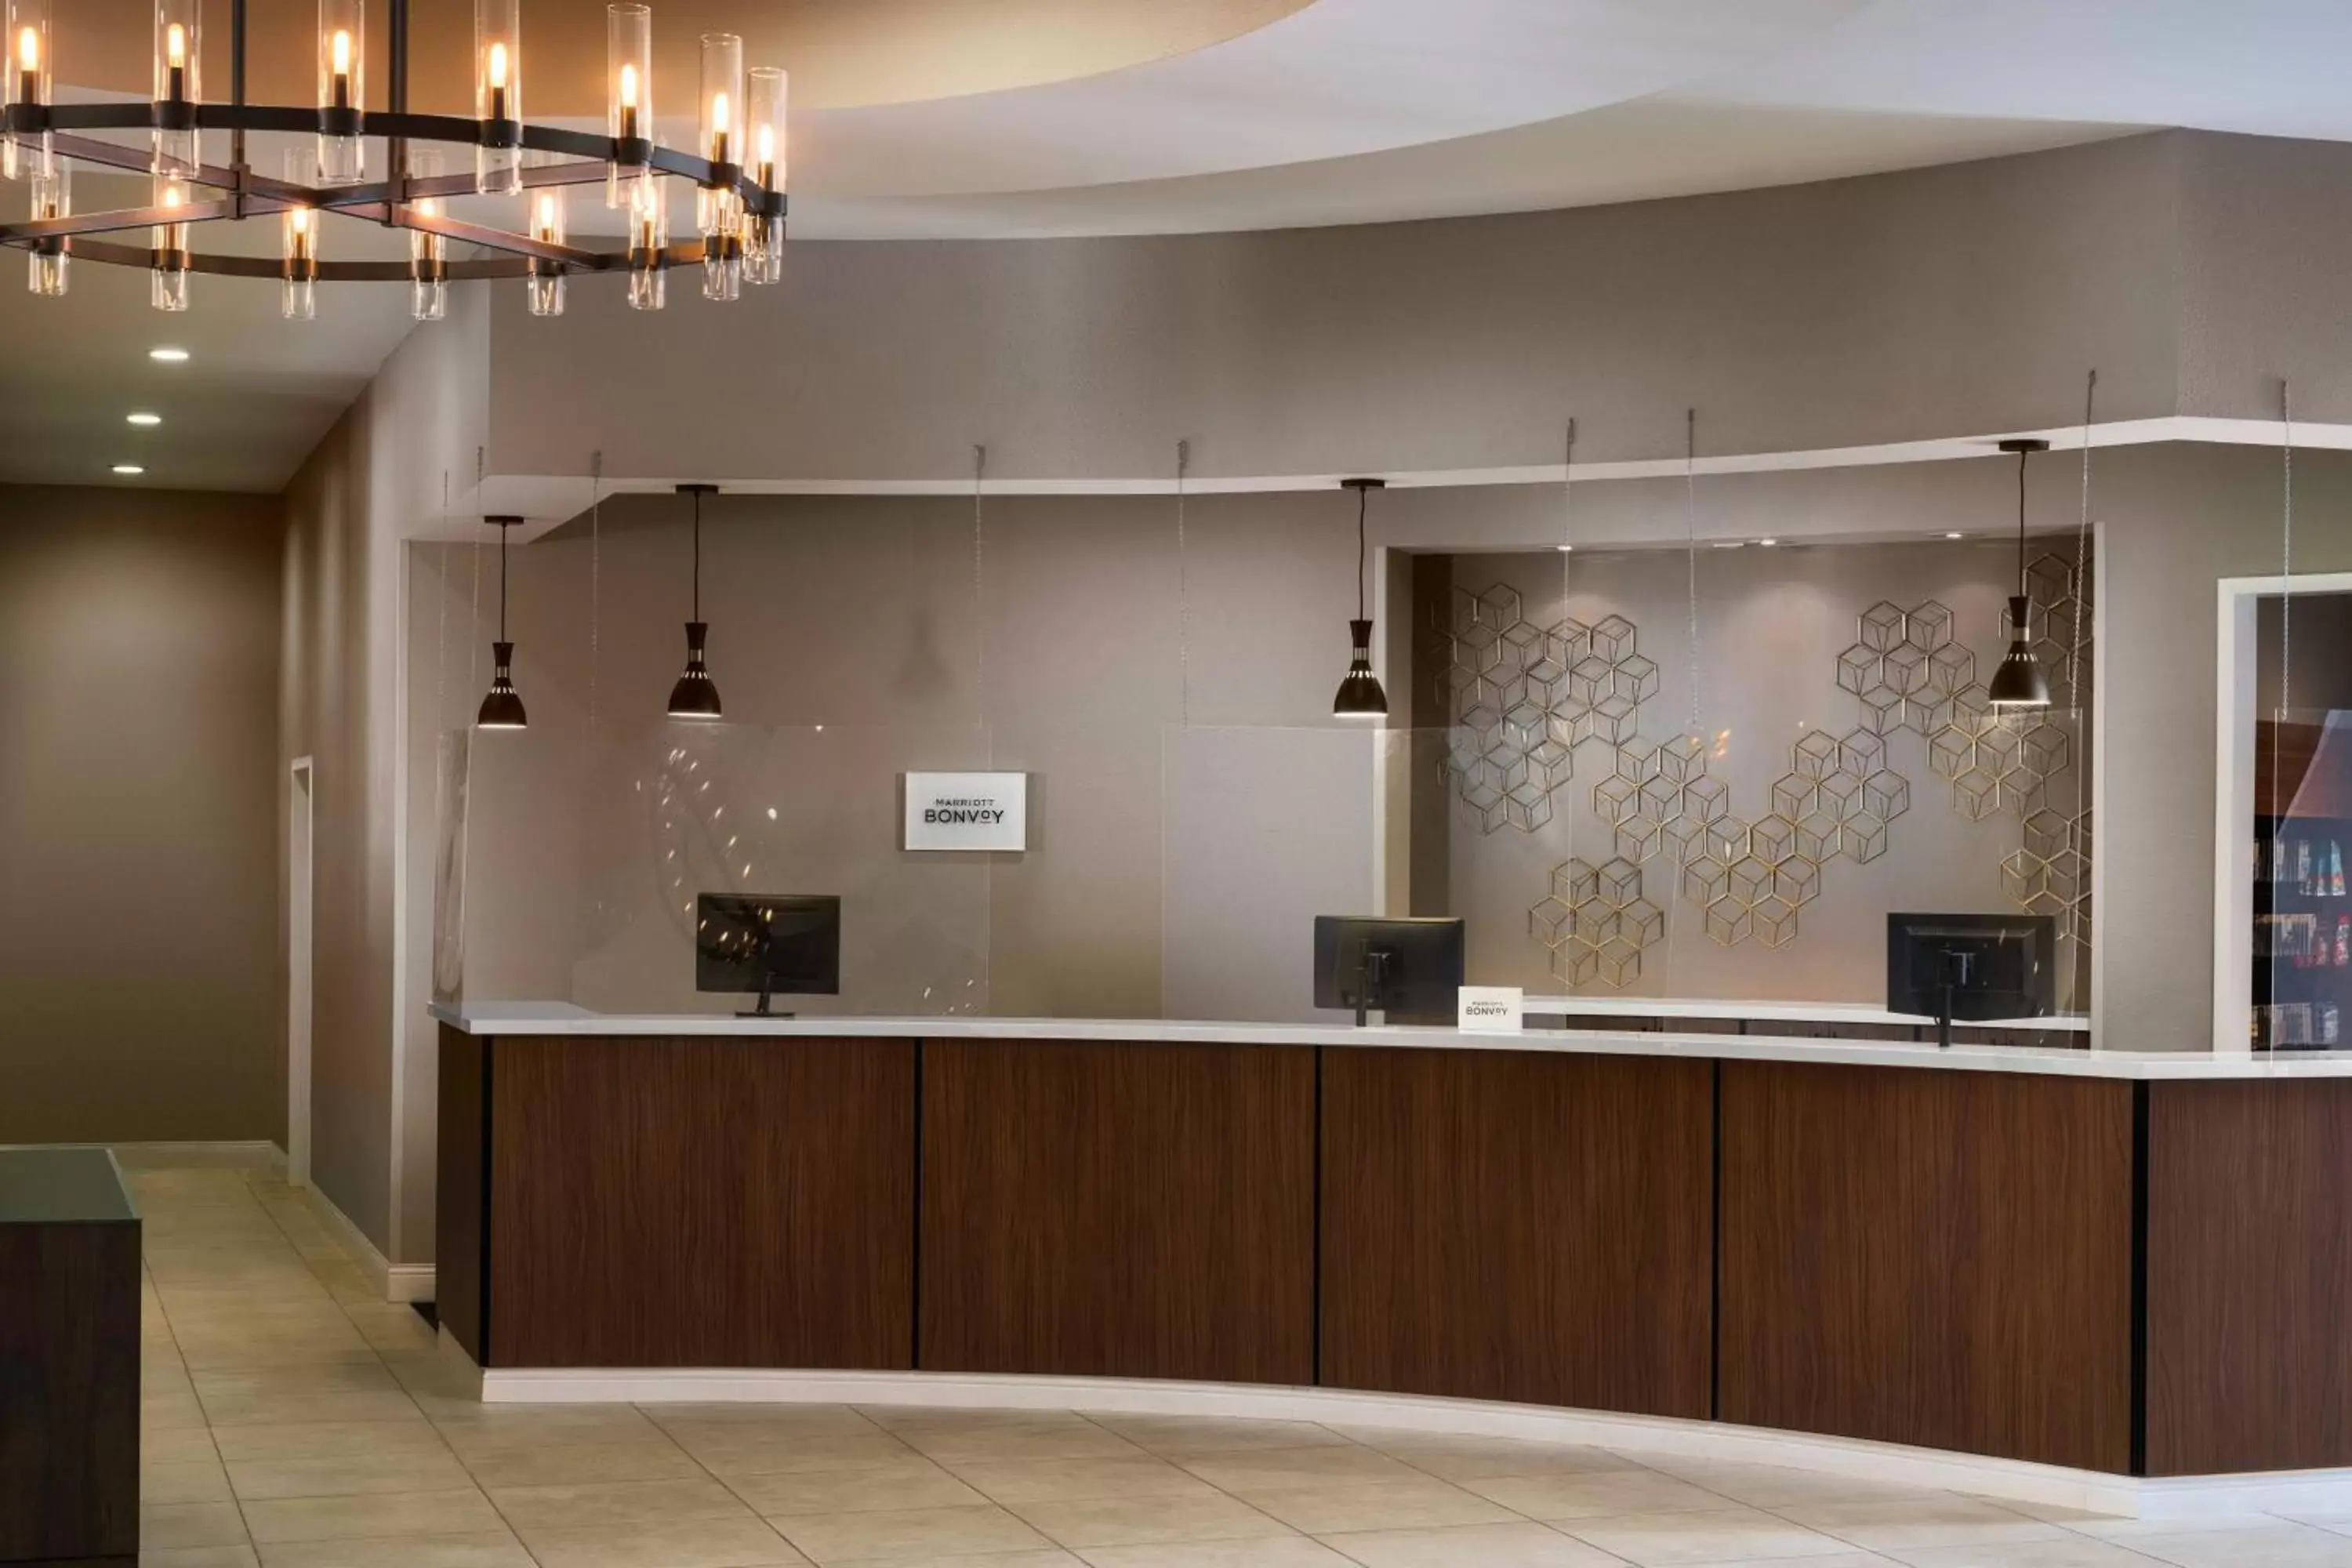 Lobby or reception, Lobby/Reception in Residence Inn by Marriott Anaheim Resort Area/Garden Grove